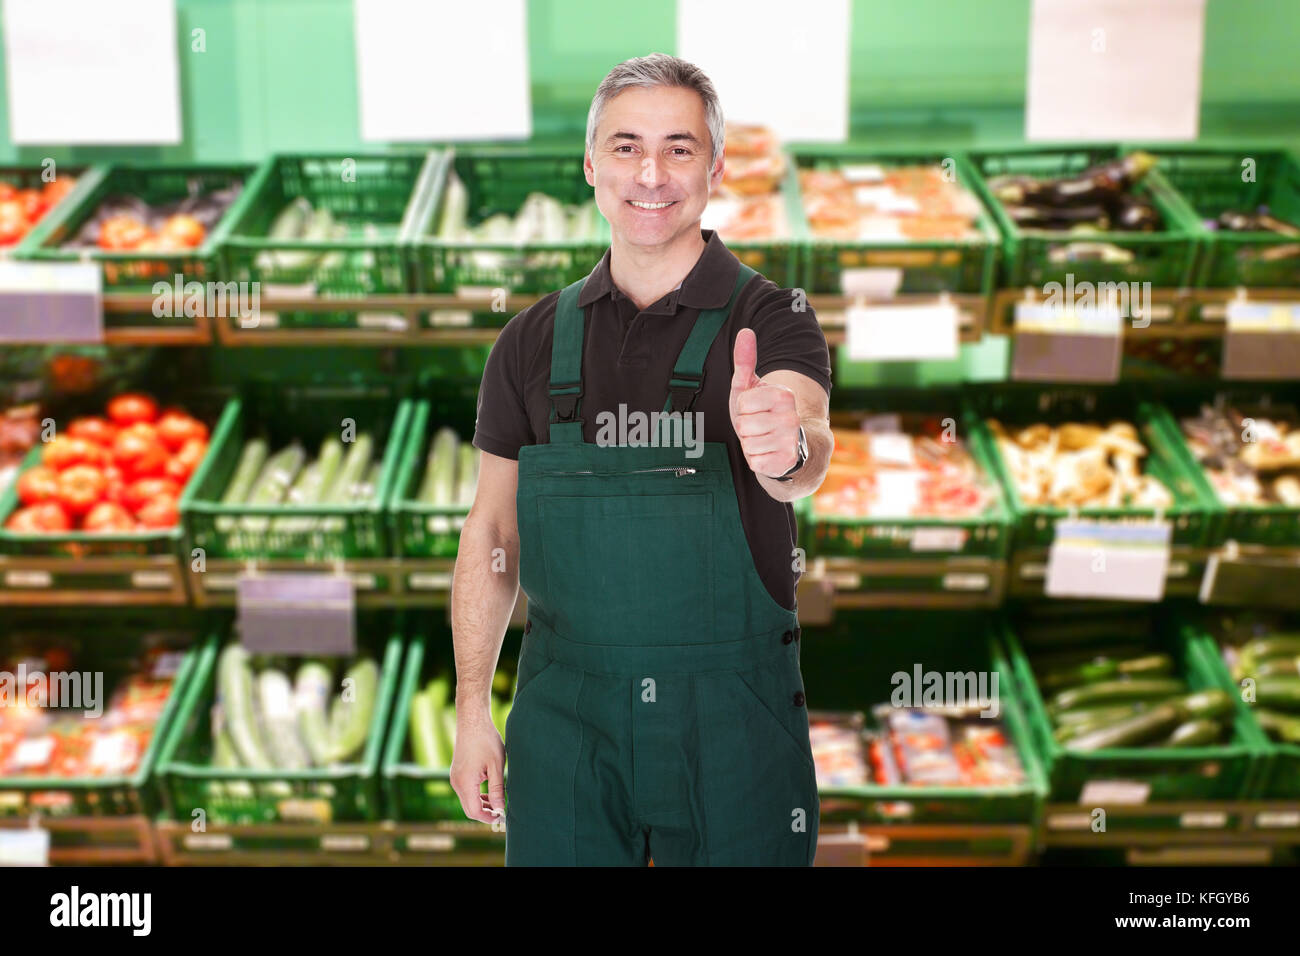 Reife Männliche Verkäuferin Zeigt Daumen Nach Oben Geste Im Supermarkt Stockfoto